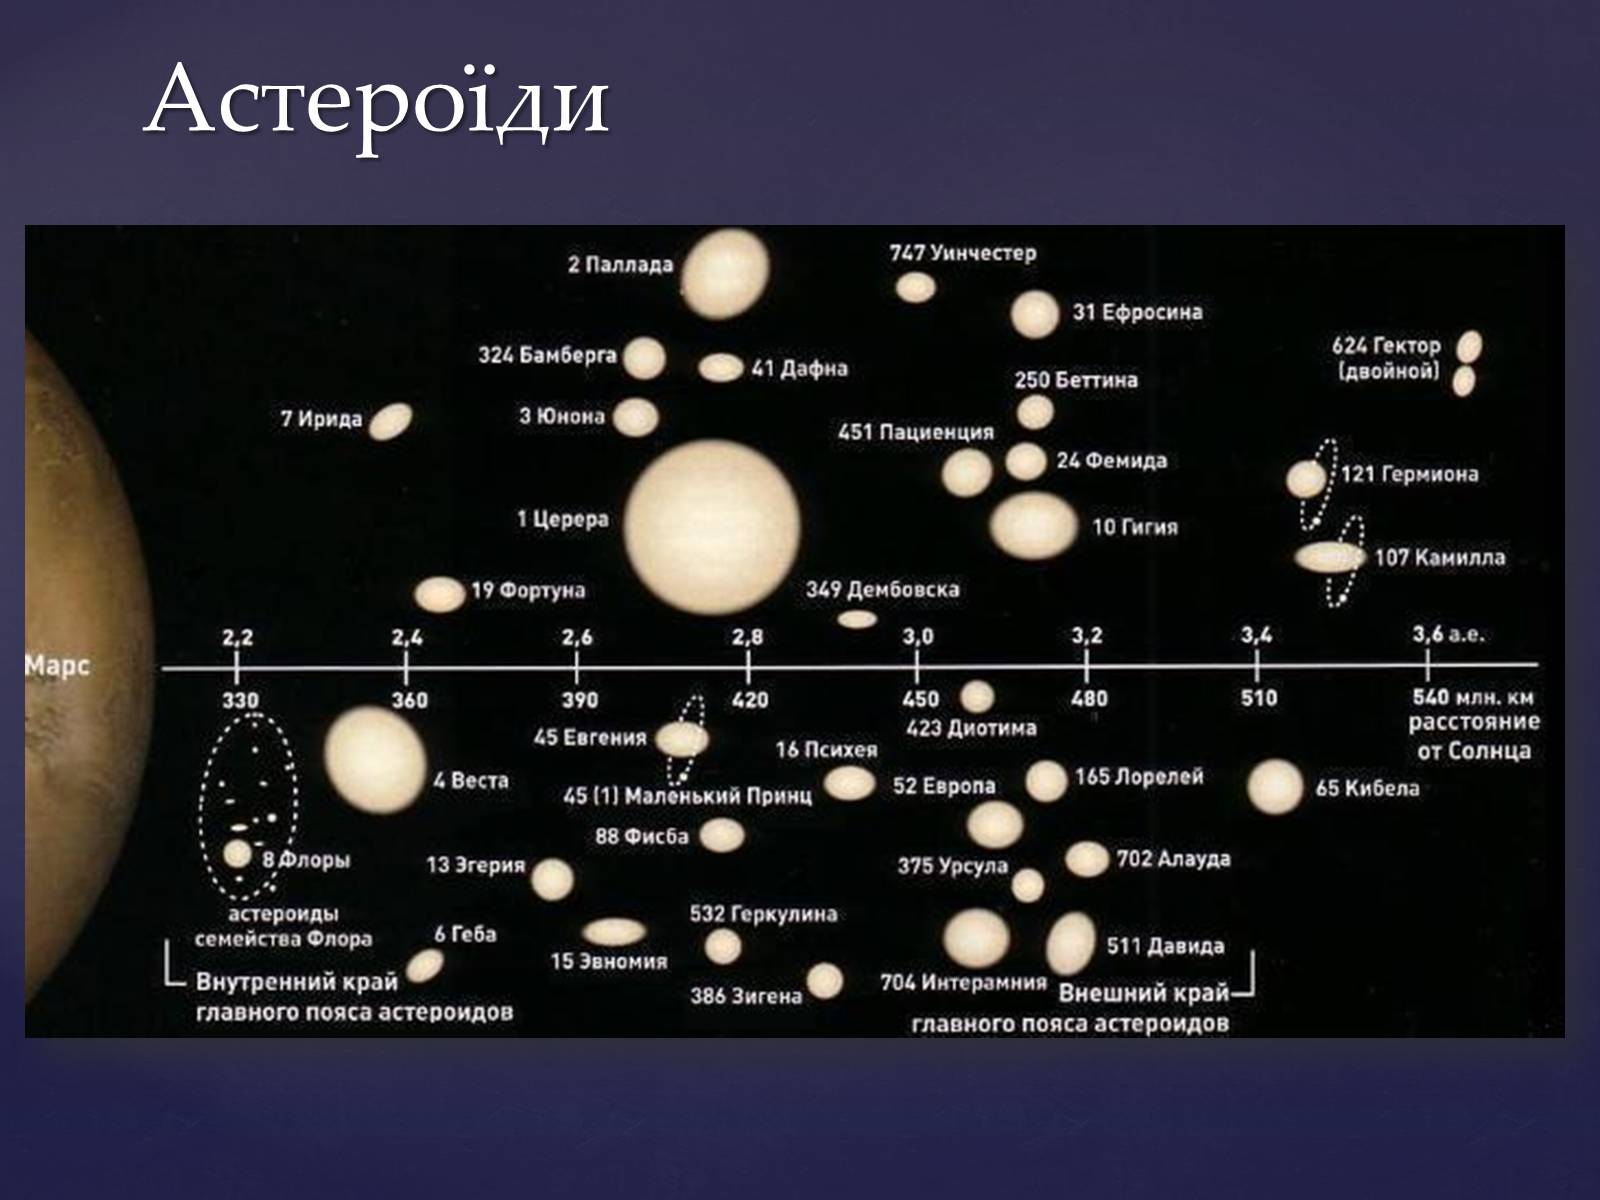 Название группы астероидов. Пояс астероидов в солнечной системе и Церрера. Церера в солнечной системе. Планета Церера на карте солнечной системы. Карликовые планеты в поясе астероидов.